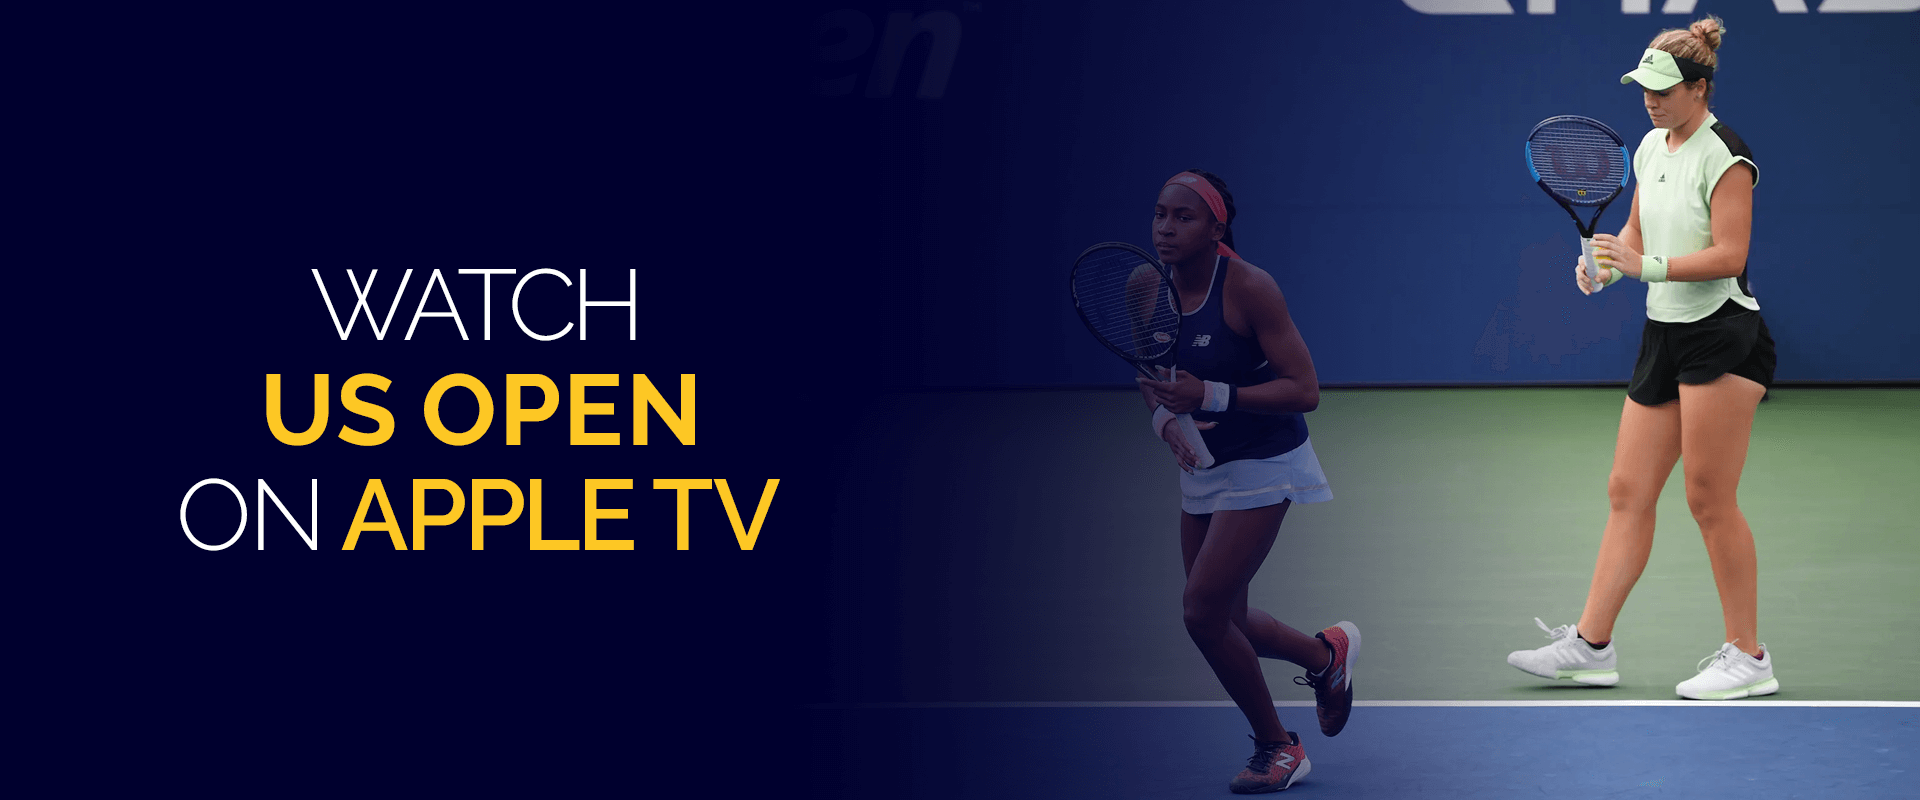 Watch US Open on Apple TV